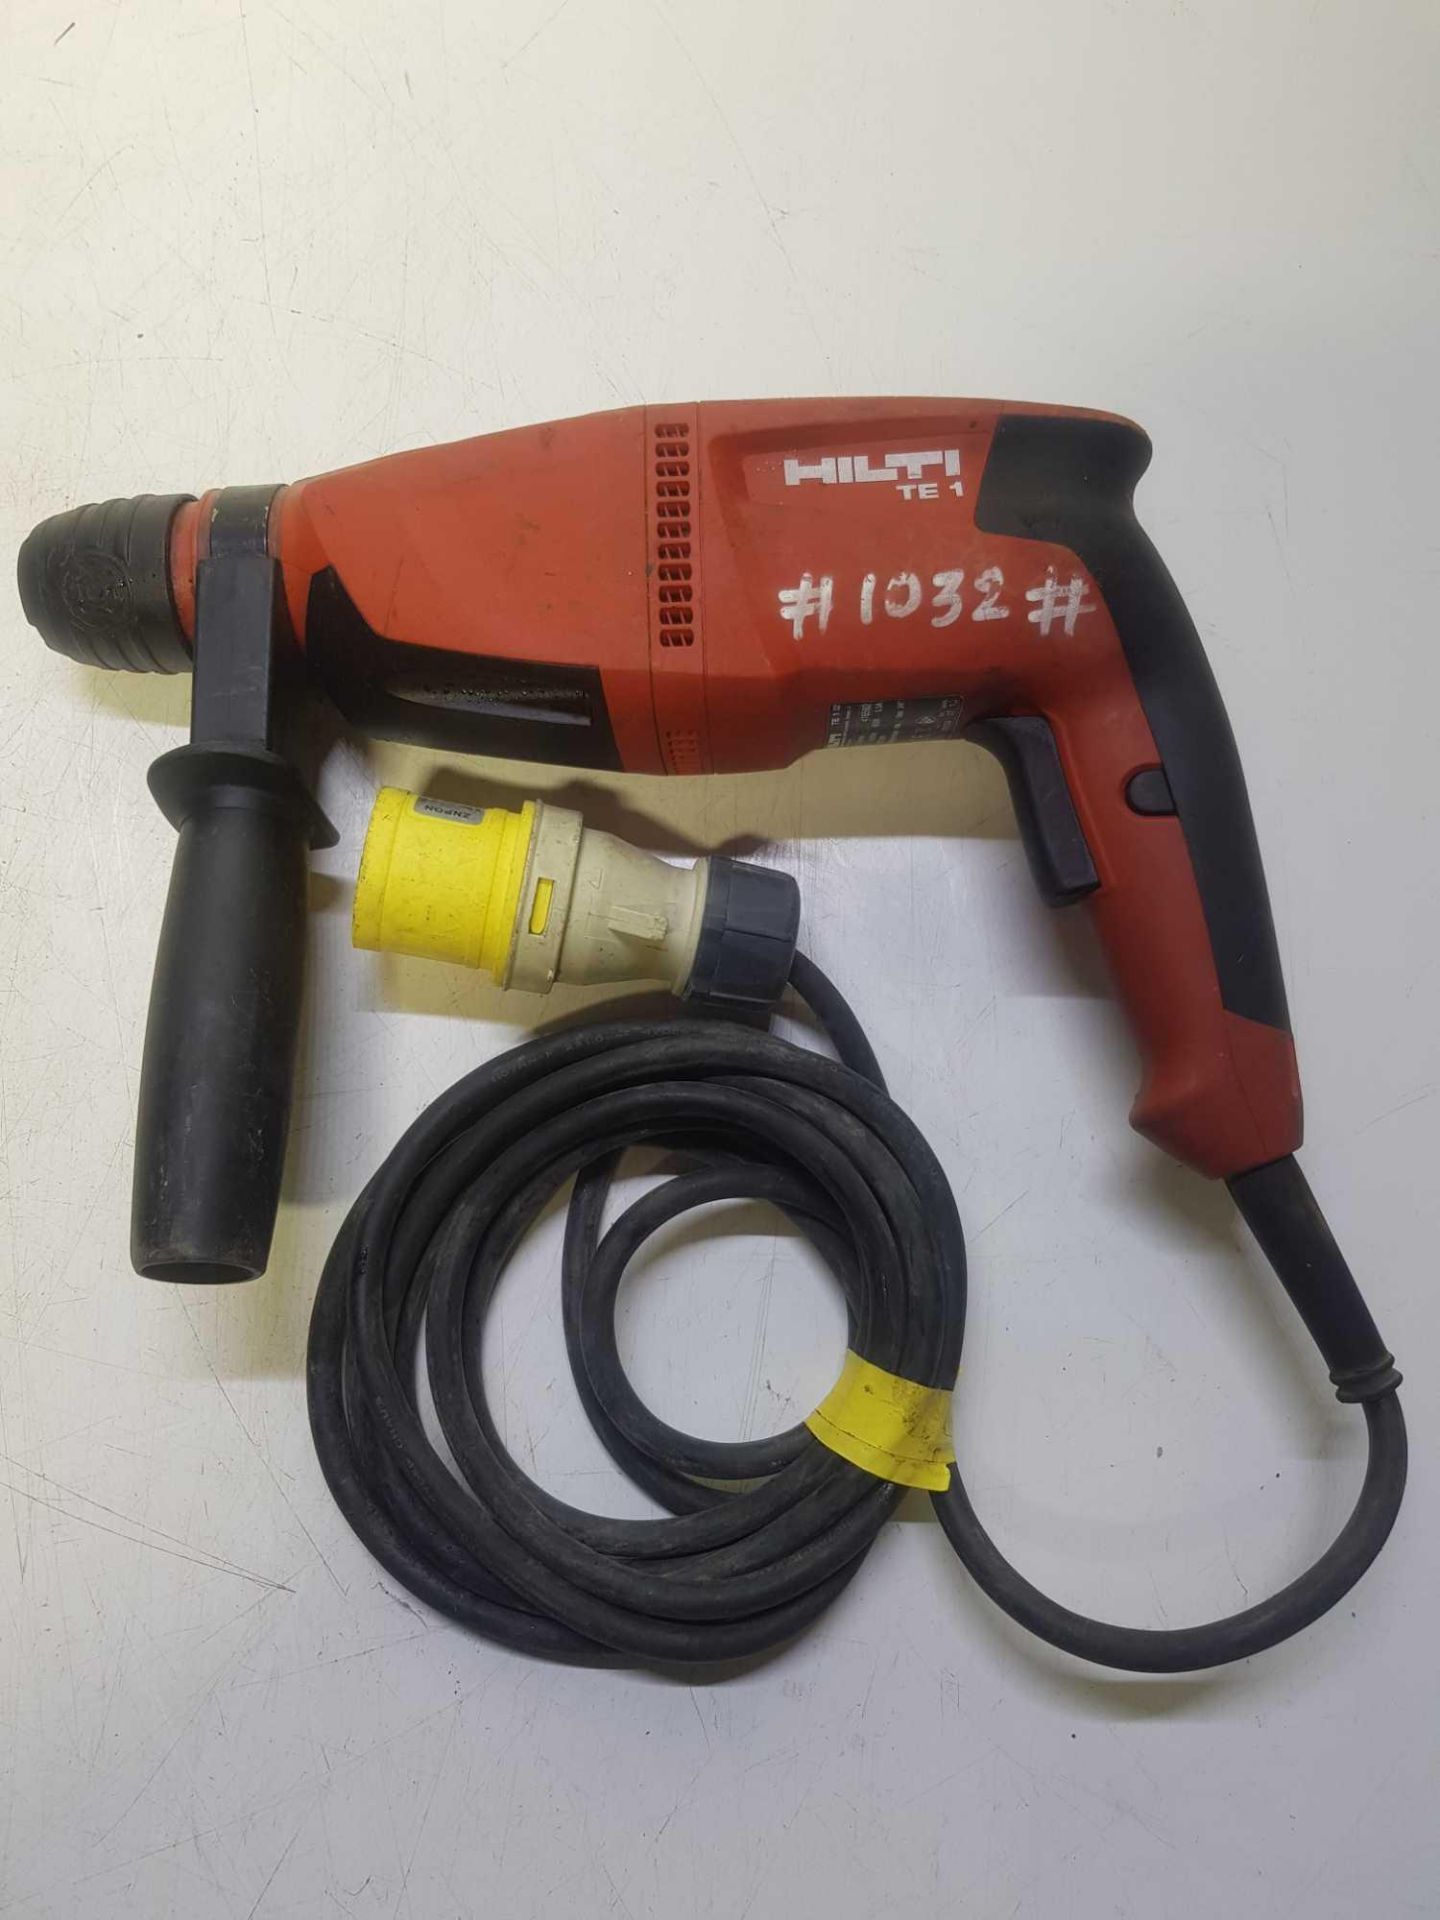 Hilti rotary hammer drill 110v